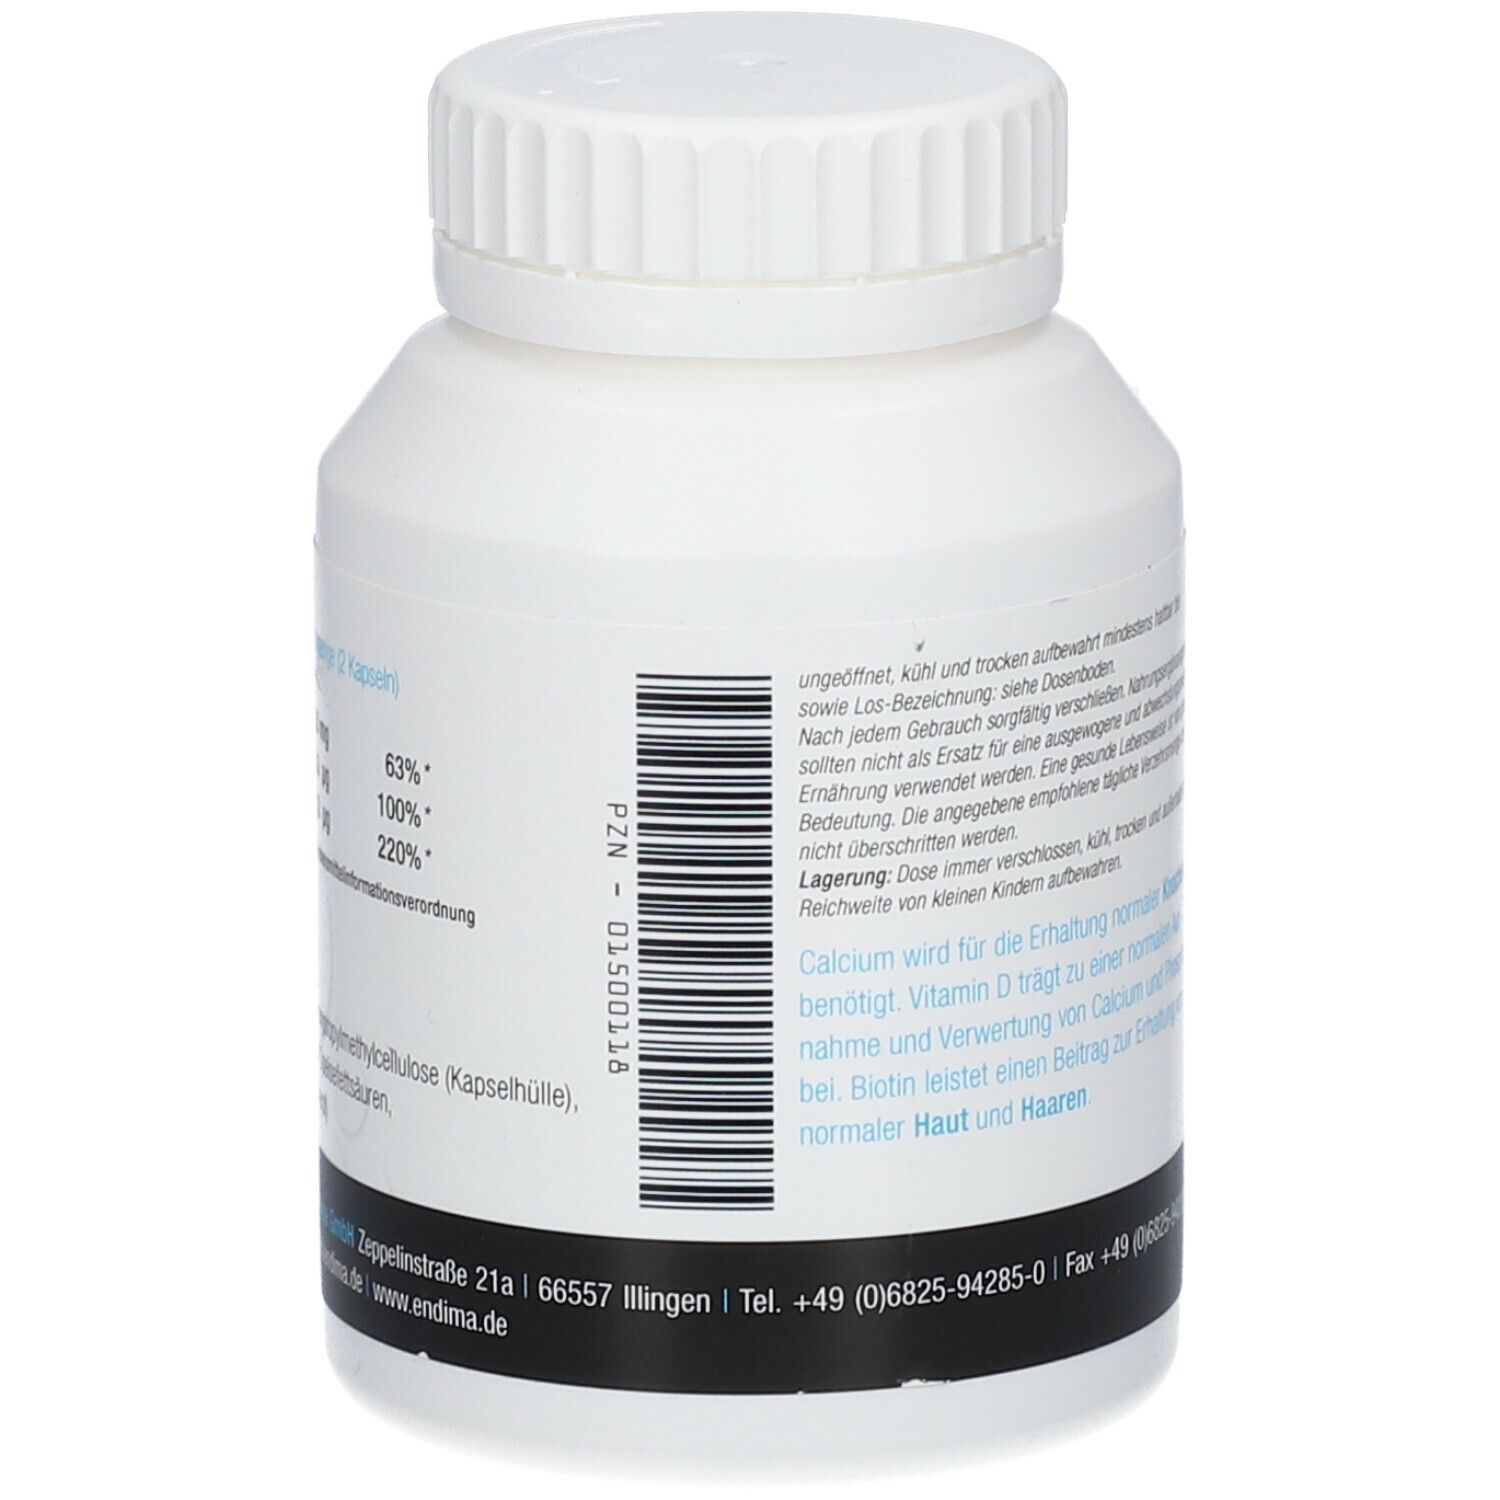 Endima® Calcium D3 Plus Kapseln